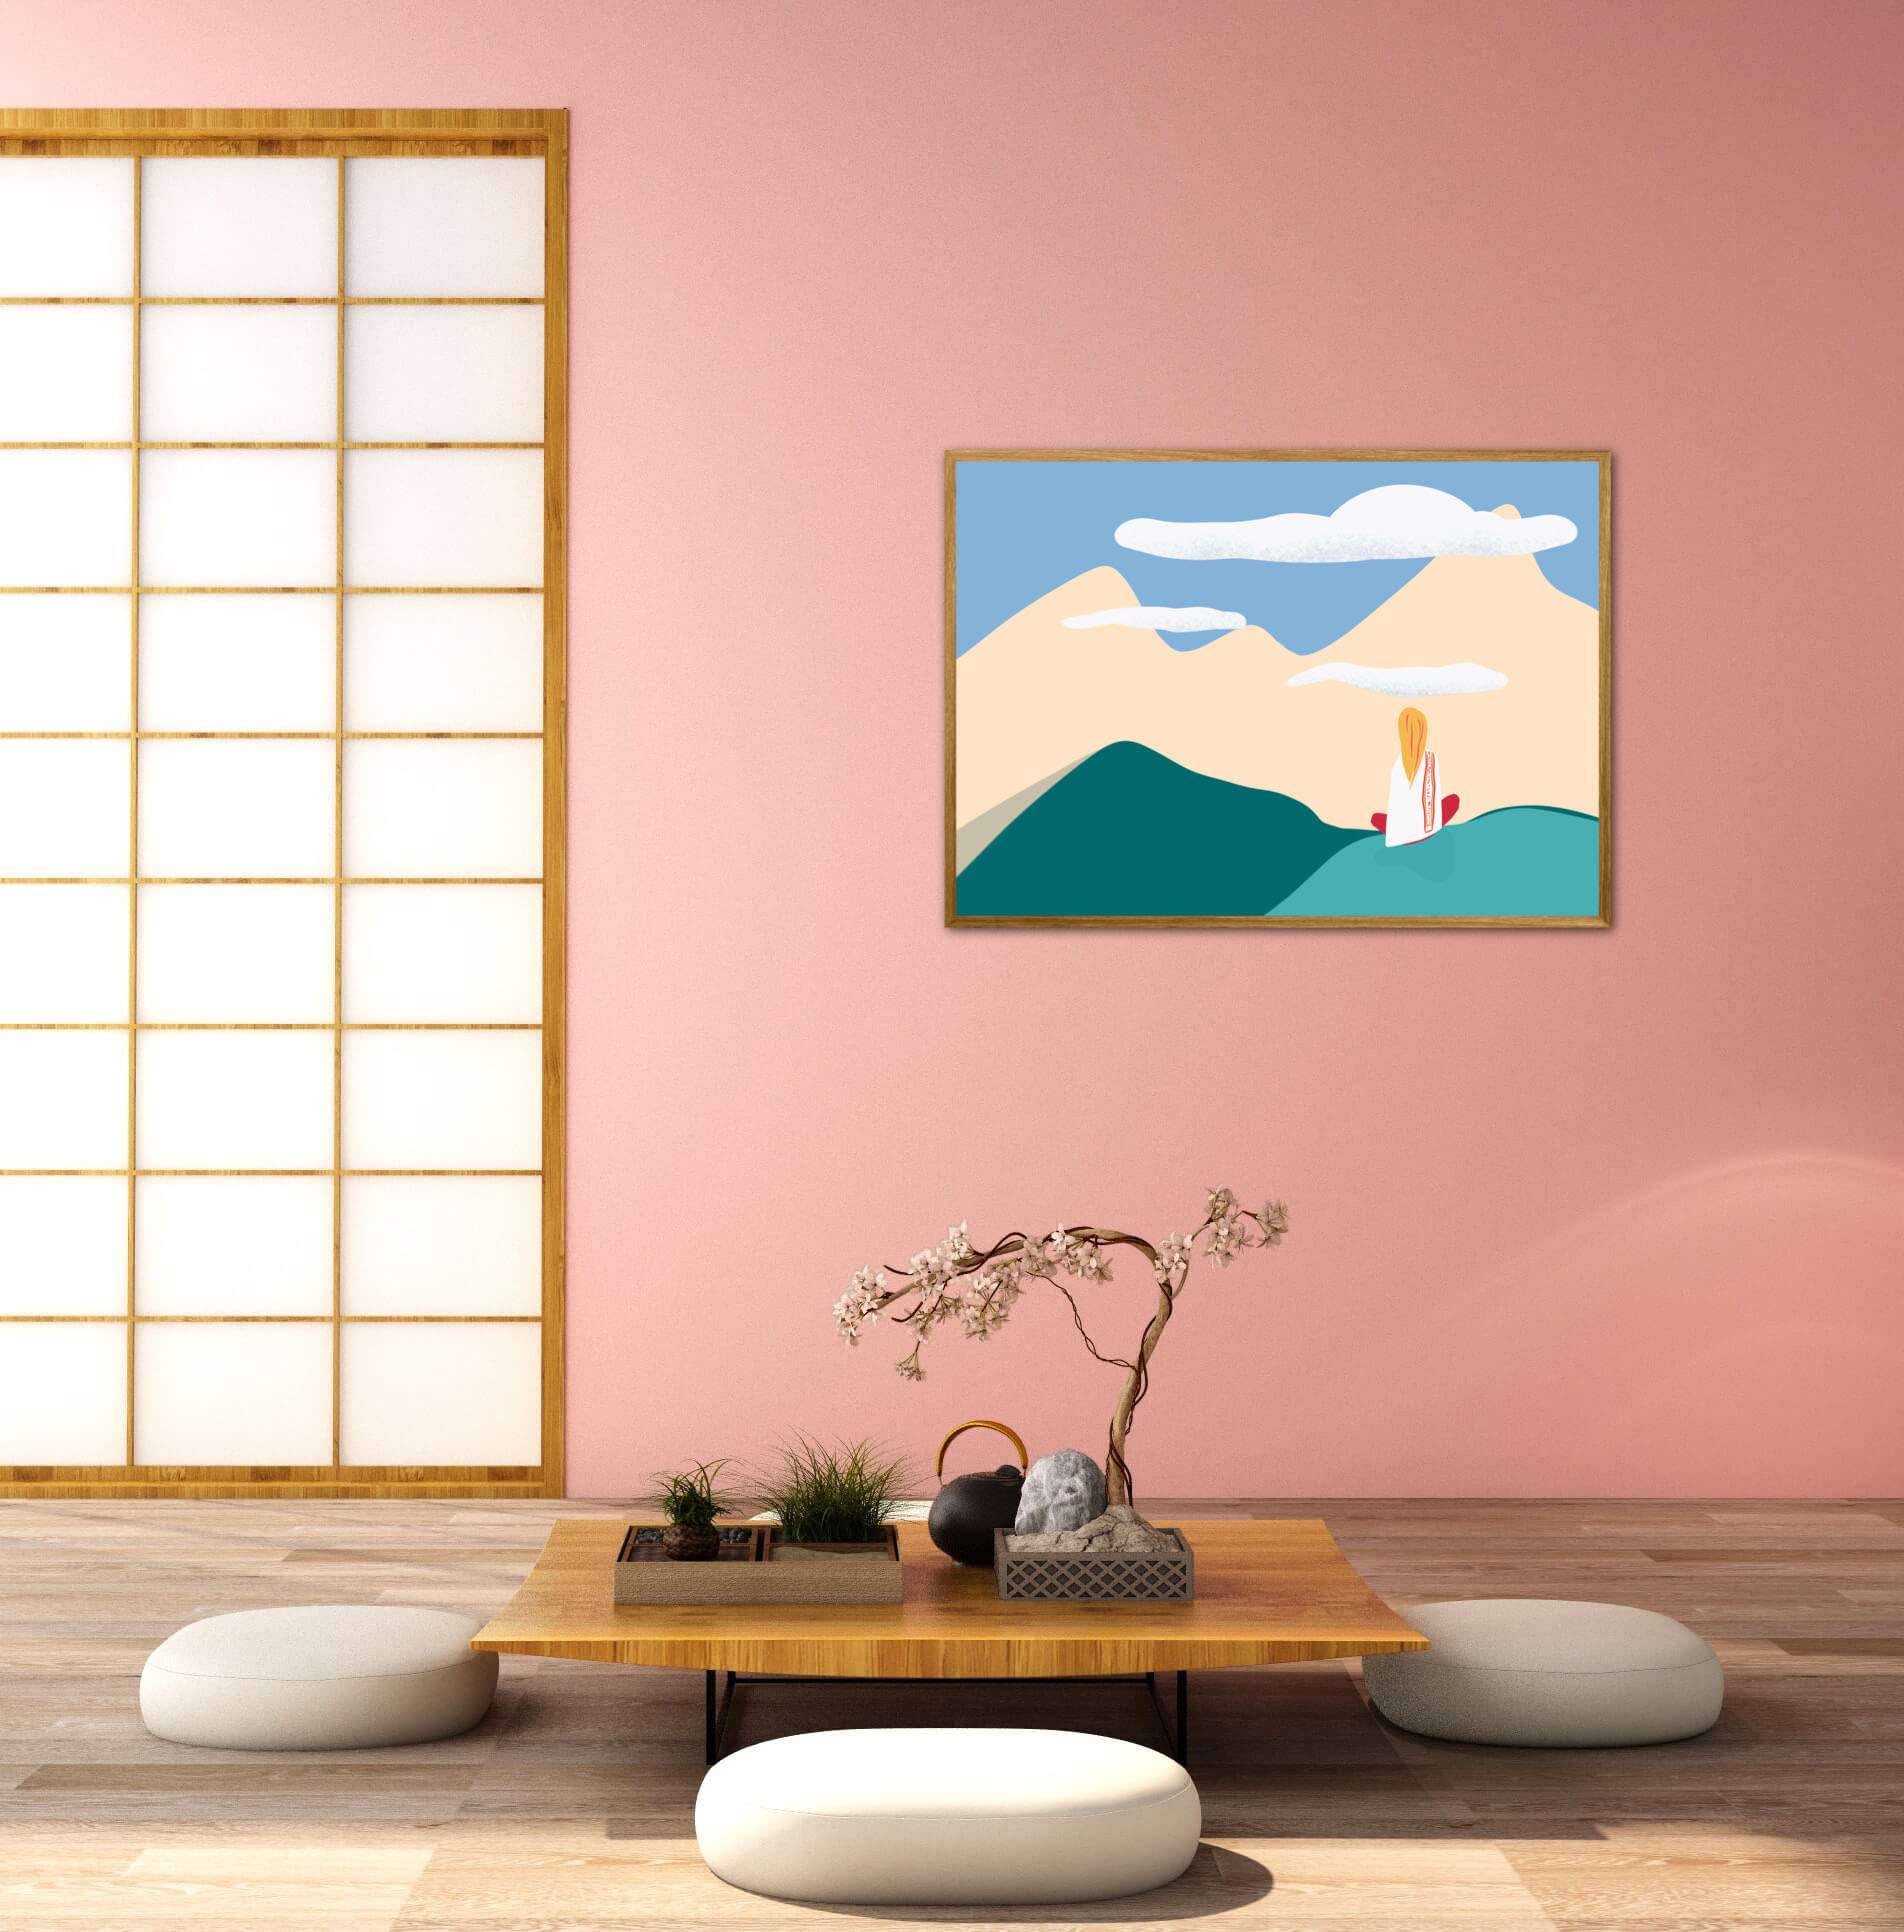 Tableau décoration intérieur, affiche zen contemplation au sommet. DENADDA.